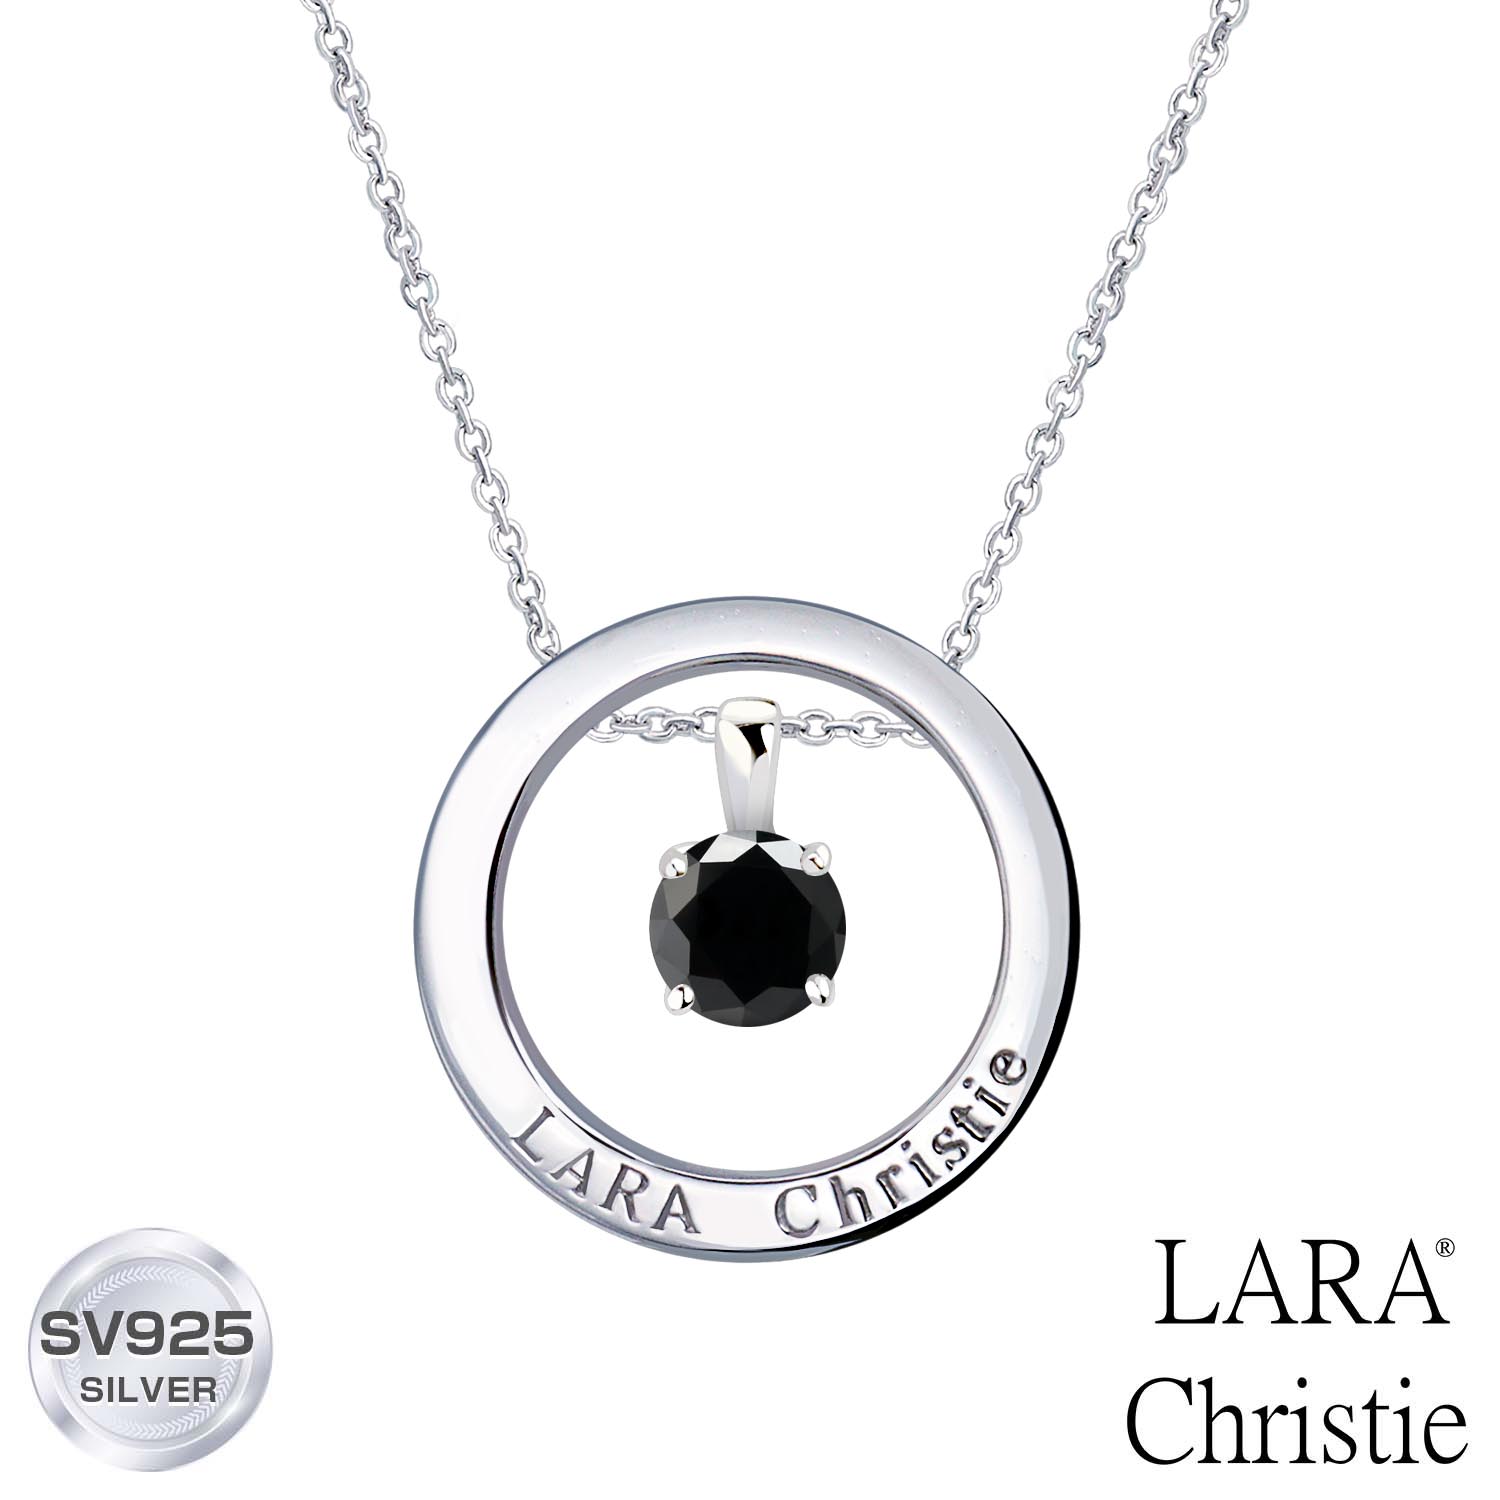 ララクリスティー メンズ ネックレス LARA Christie (ララクリスティー)ヴォヤージュ ネックレス[ BLACK Label ] シルバー925 silver 男性 誕生日プレゼント